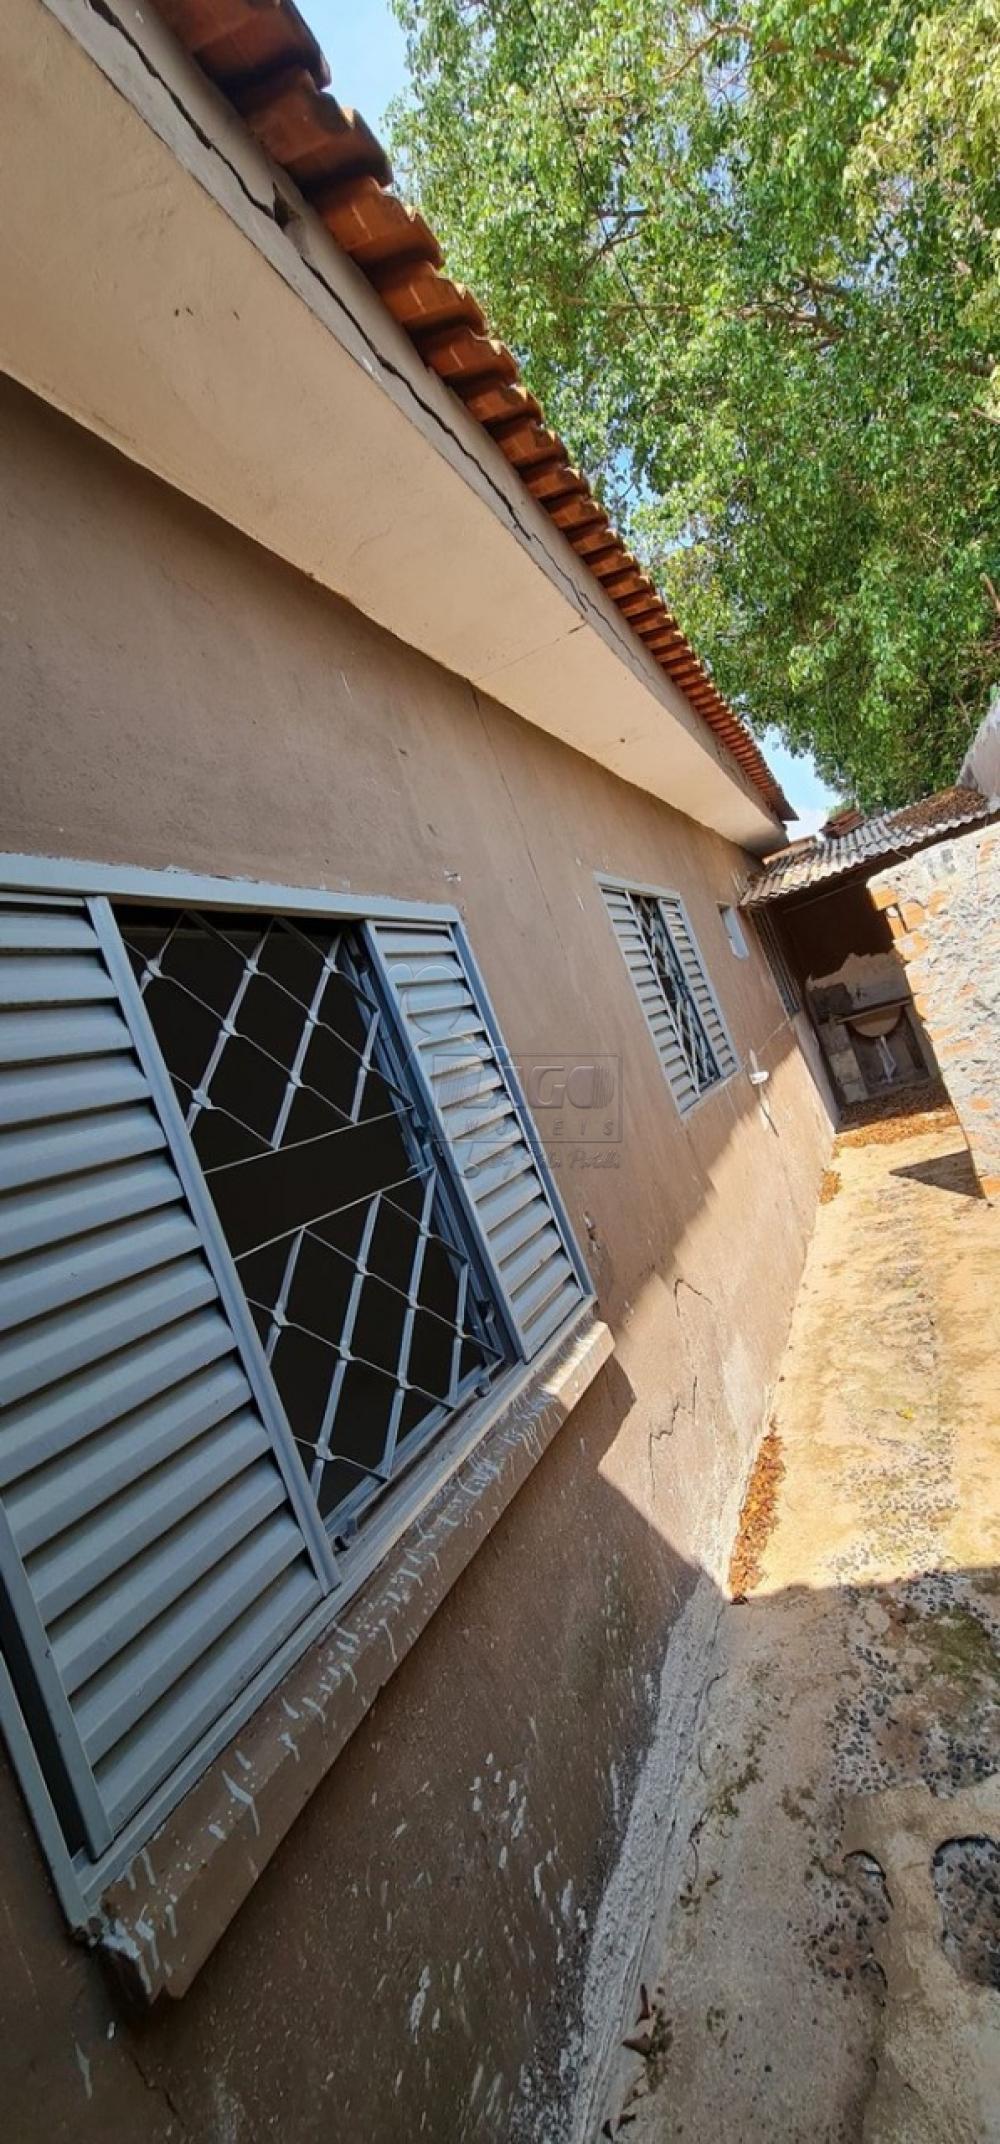 Comprar Casas / Padrão em Ribeirão Preto R$ 250.000,00 - Foto 2